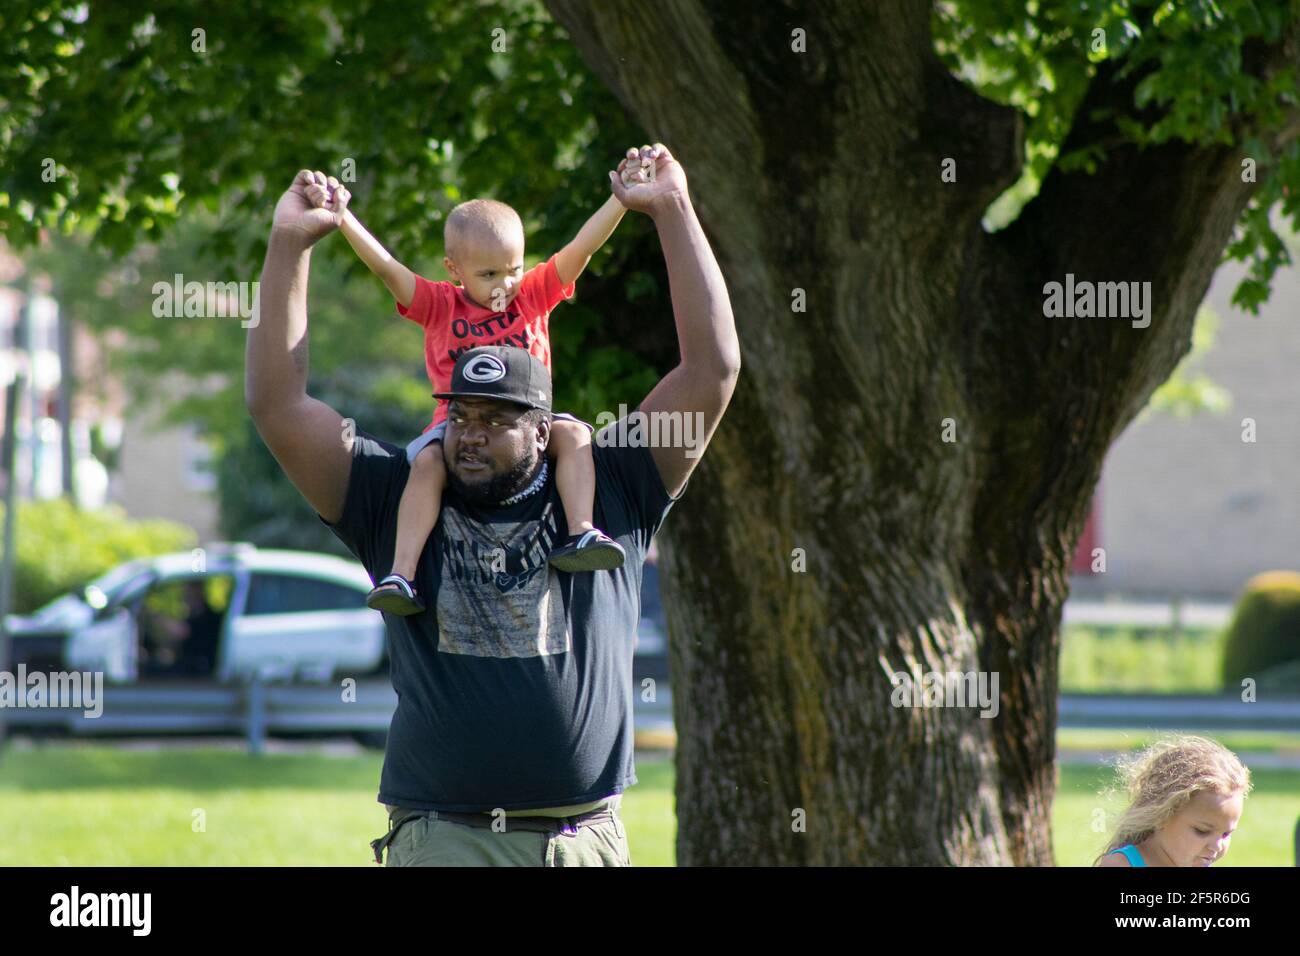 Papa afro-américain - Père transportant un jeune fils ou un tout-petit en signe de protestation Banque D'Images